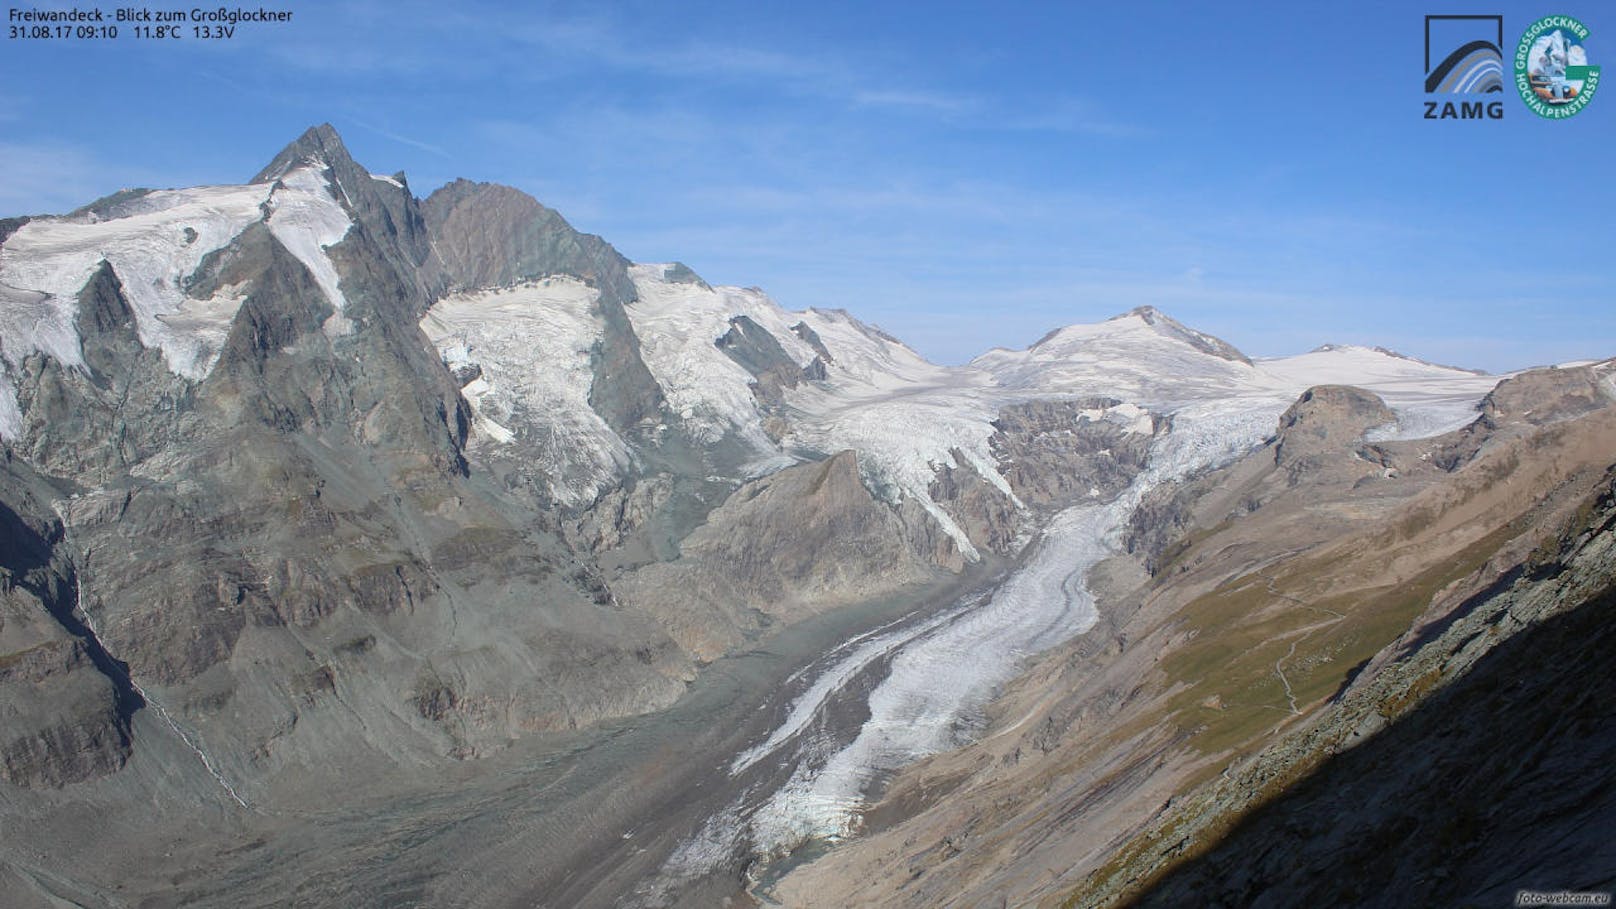 Österreichs größter Gletscher zerfällt: Die Pasterze am 31. August 2017. Im Bereich der Gletscherzunge im Vordergrund schmolz die Eisdicke in nur vier Monaten um fünf bis zehn Meter. Wo das Eis mit Schutt bedeckt ist, schmilzt weniger, da der Schutt die Strahlung abschattet.